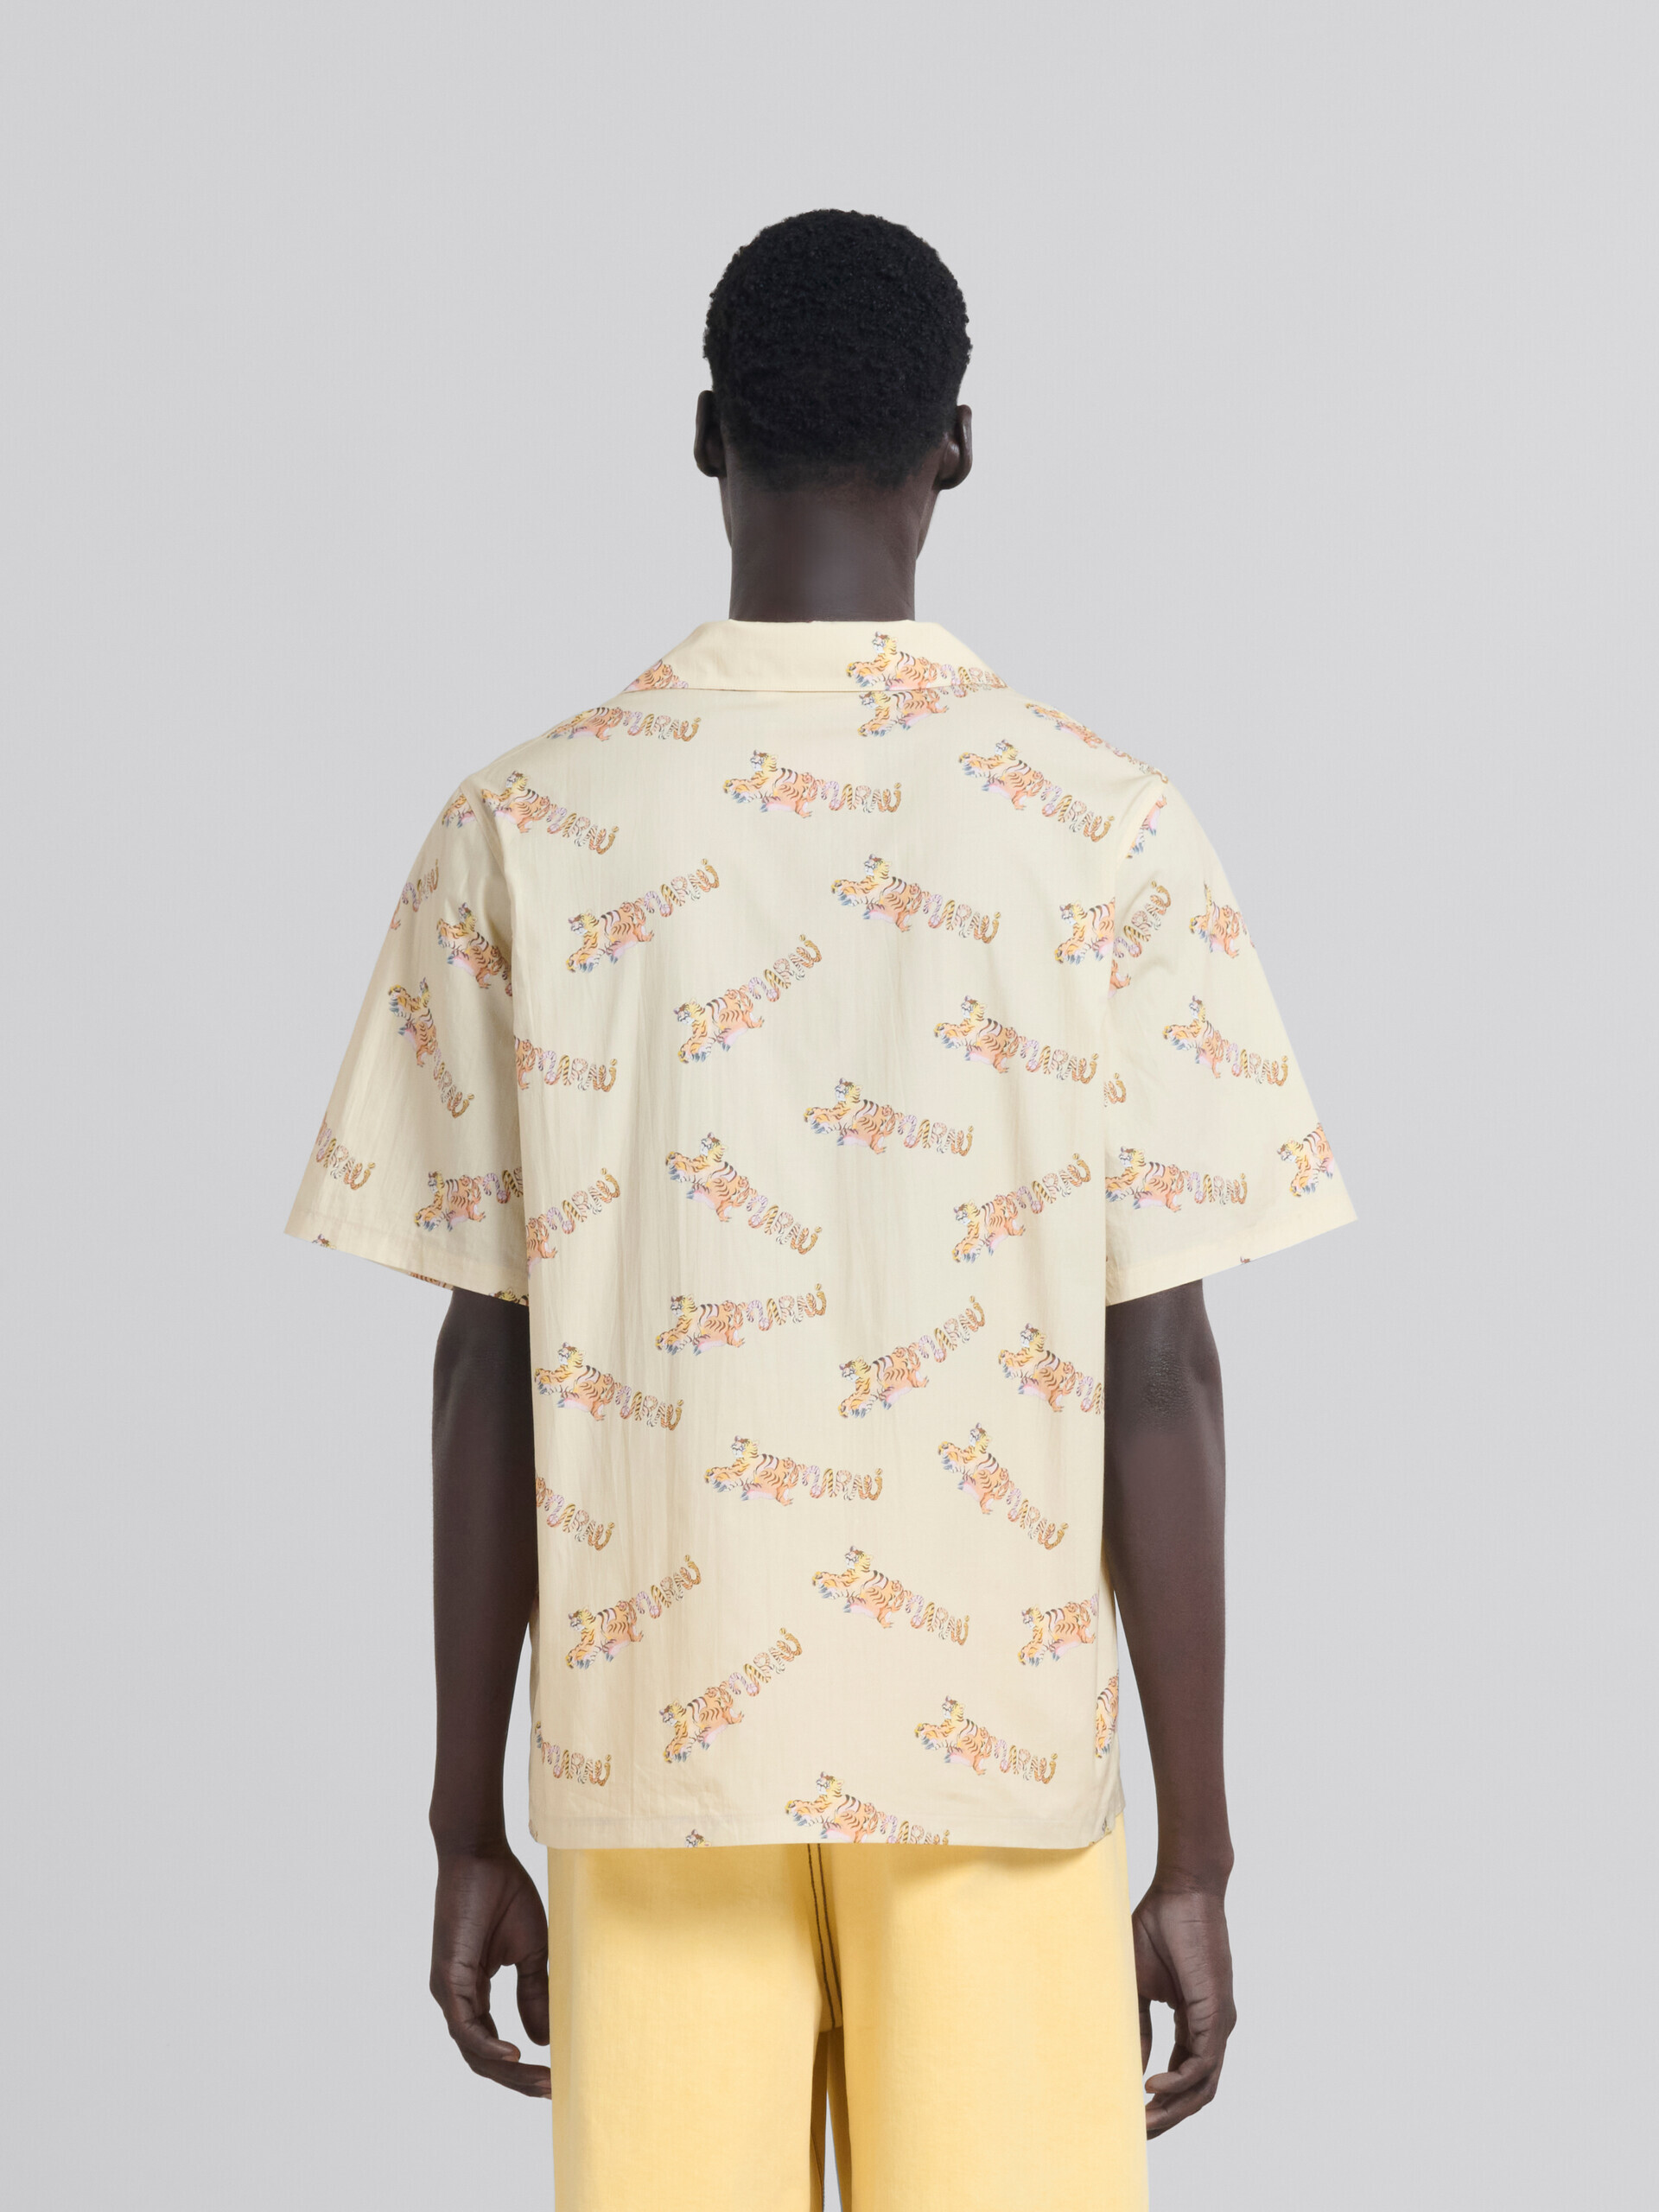 プリント入りベージュのオーガニックポプリン製ボーリングシャツ - シャツ - Image 3